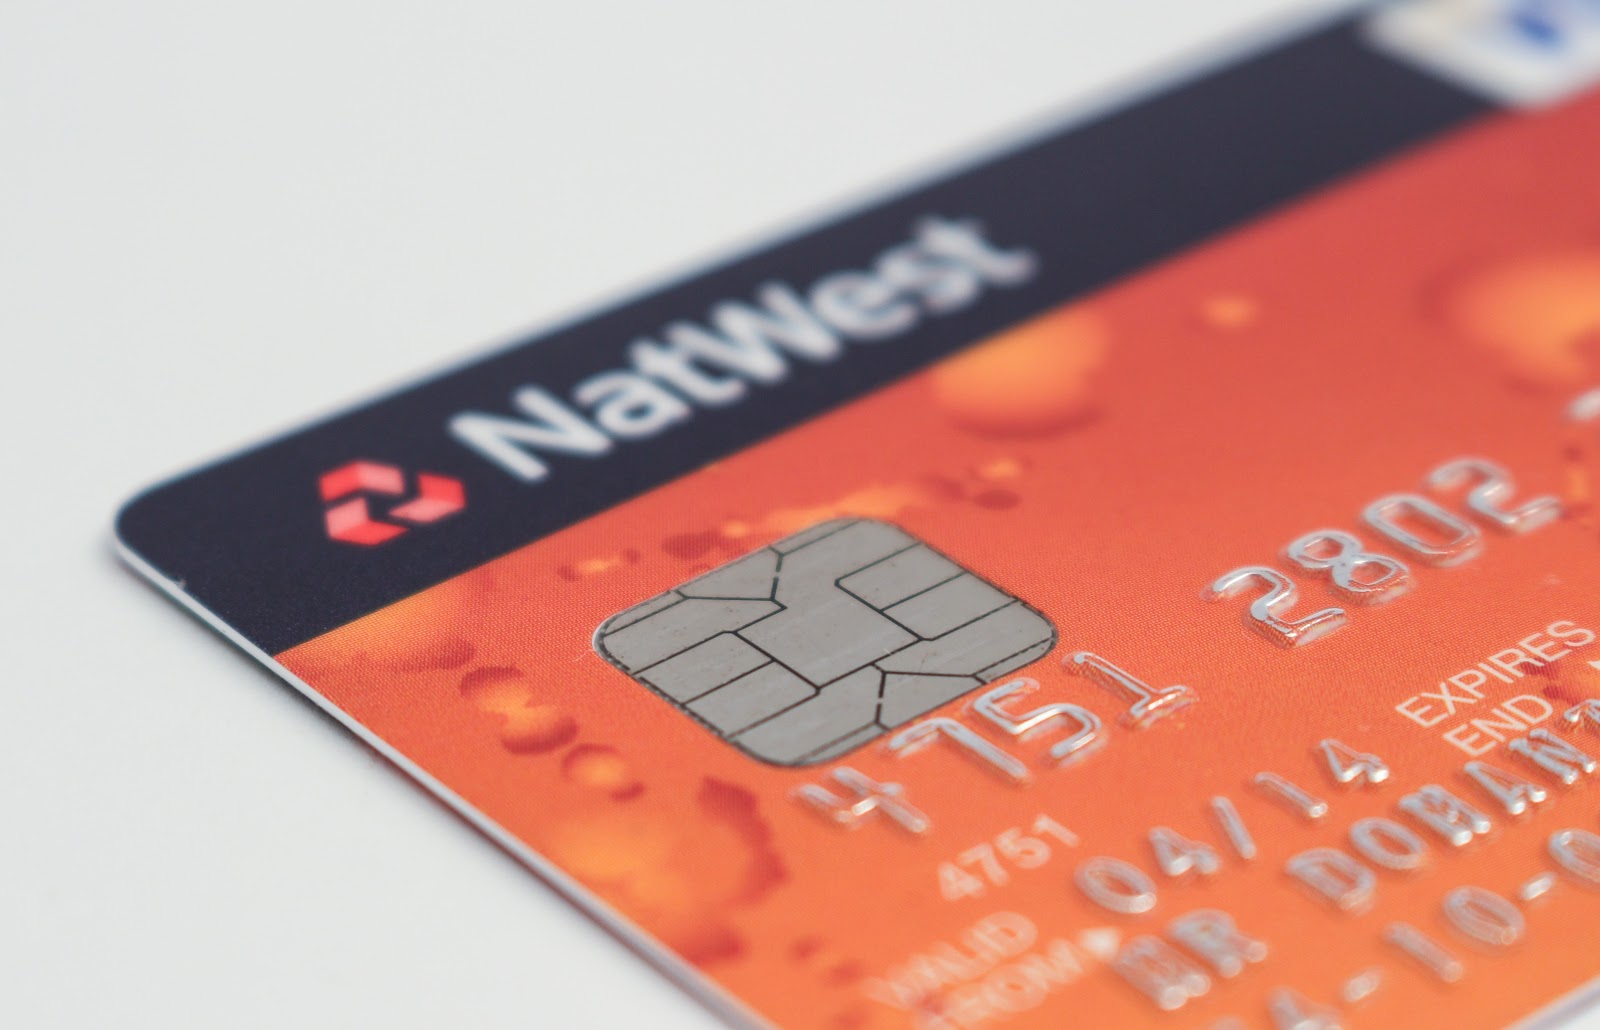 ¿Cómo encontrar el EIN de una empresa: una tarjeta de crédito?